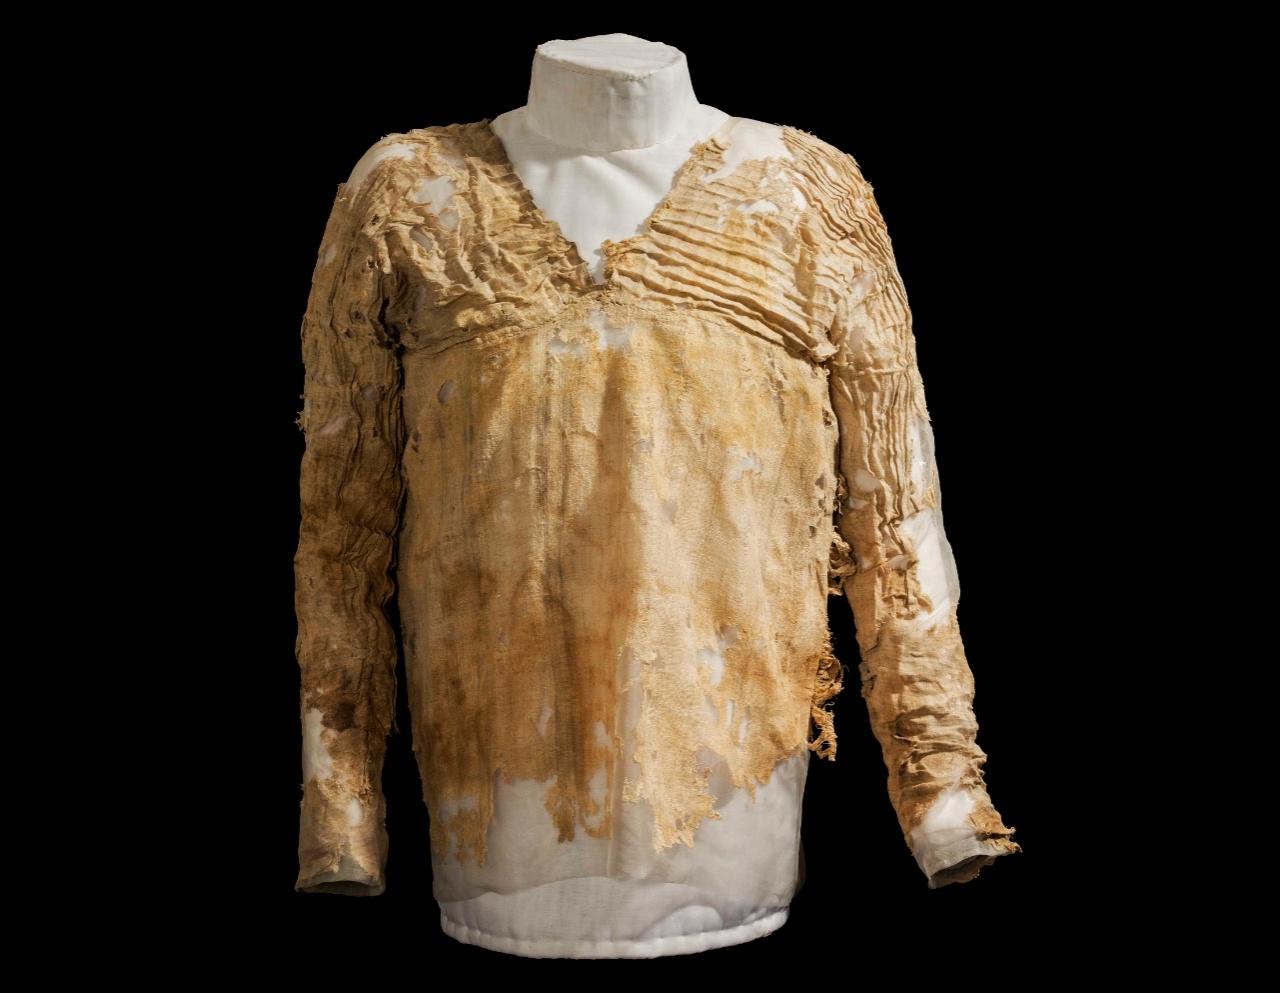 Die unglaubliche Geschichte hinter dem ältesten Kleid der Welt aus Ägypten, das mehr als 5,000 Jahre alt ist 1